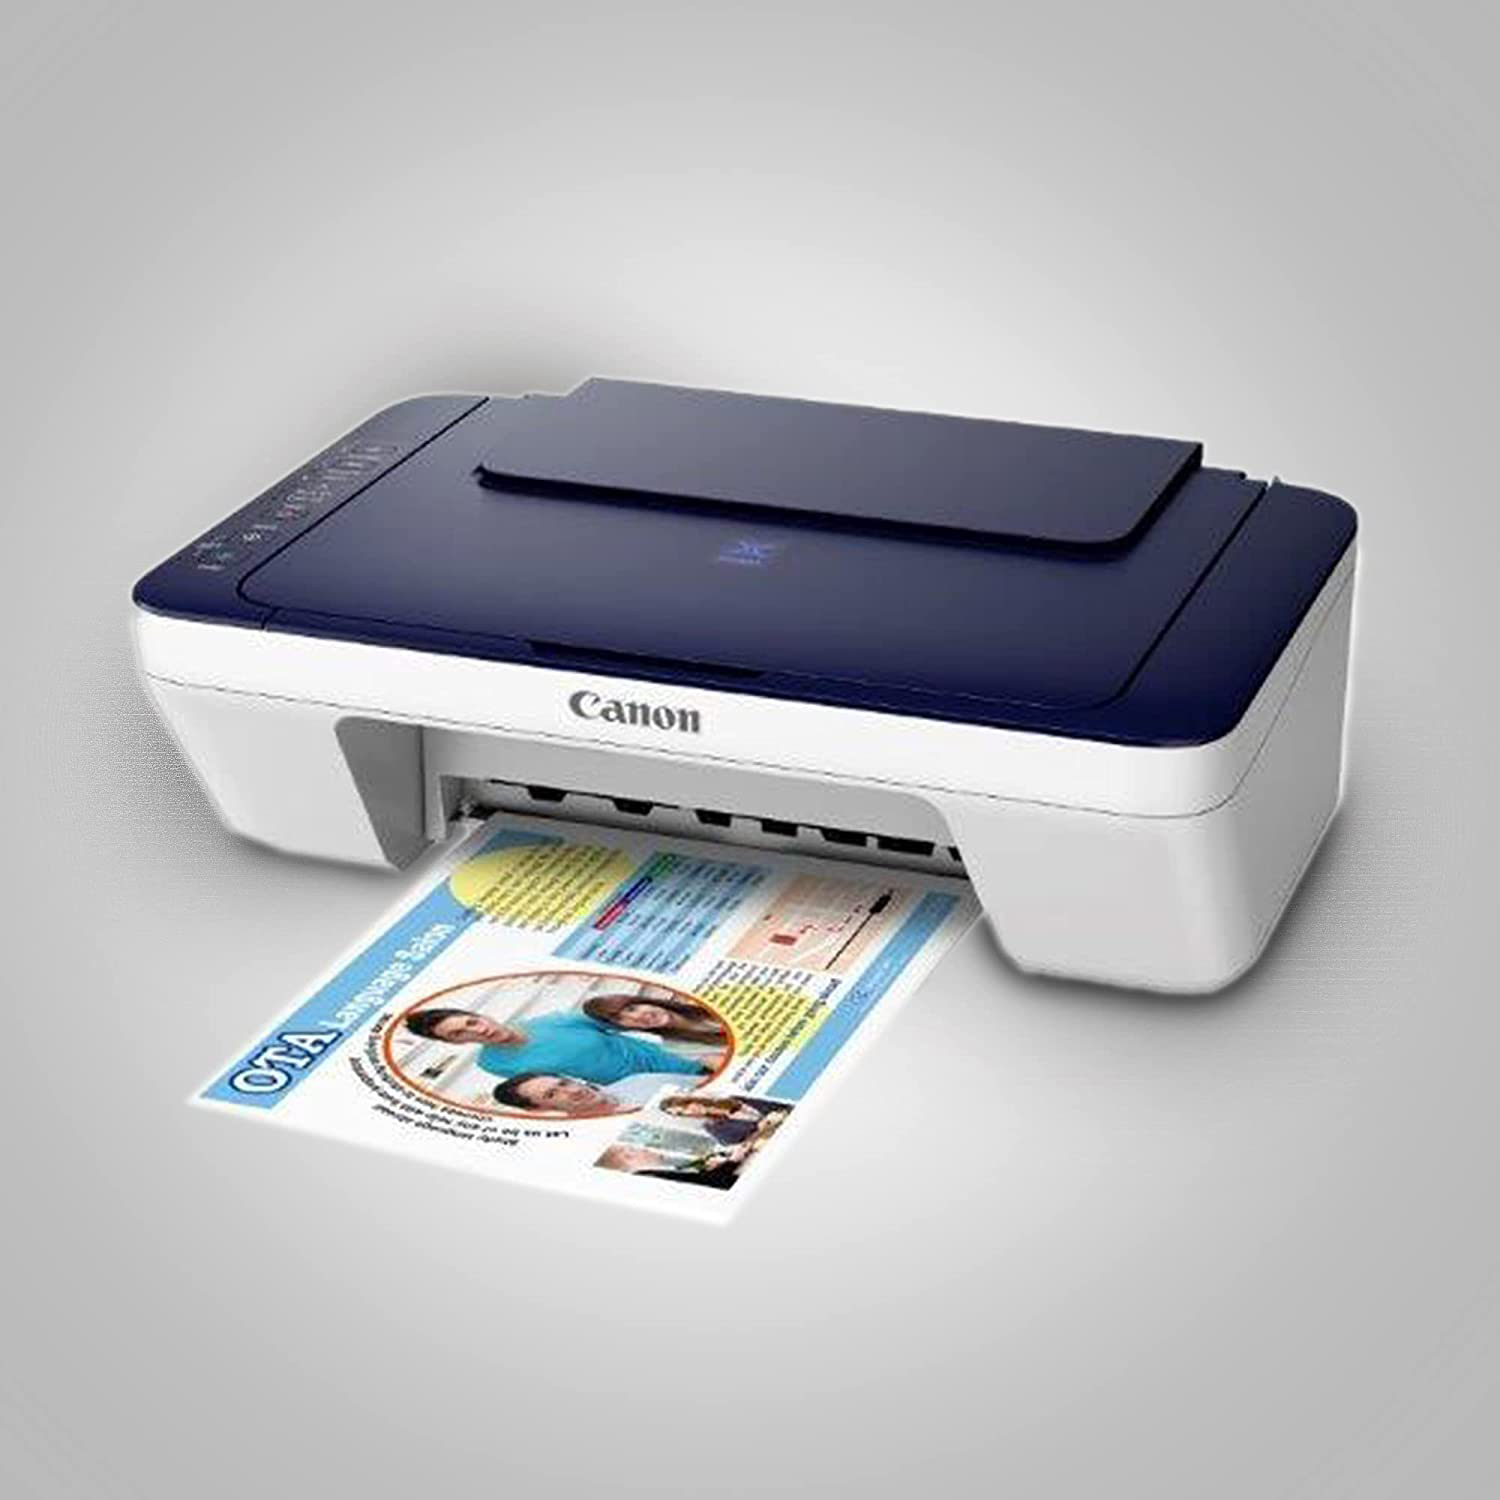 Canon PIXMA E477 All-in-One Wireless Ink Efficient Color Printer (White/Blue)